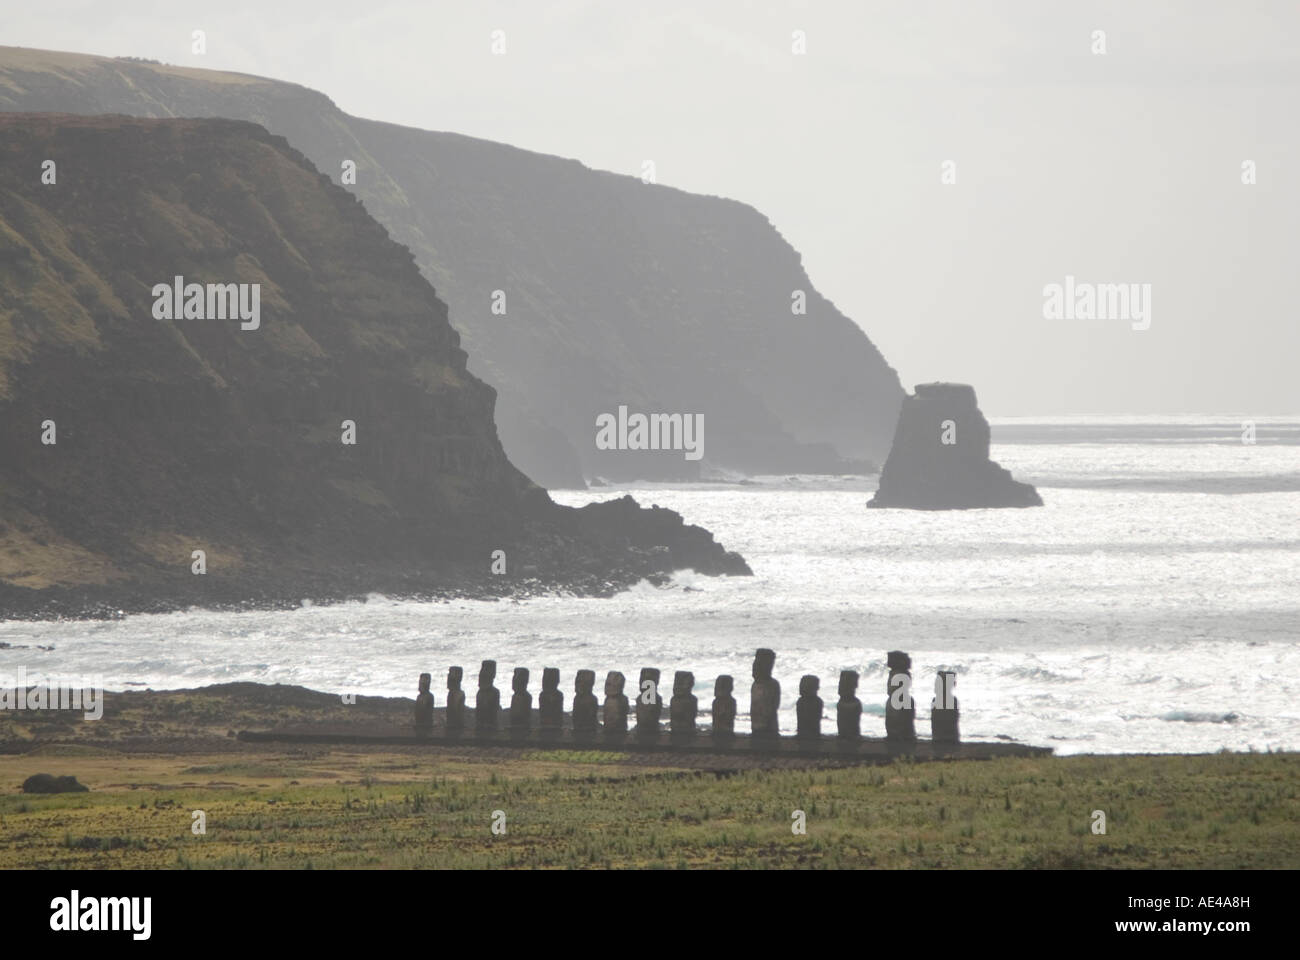 Ahu Tongariki, Sito Patrimonio Mondiale dell'UNESCO, l'Isola di Pasqua (Rapa Nui), Cile Foto Stock